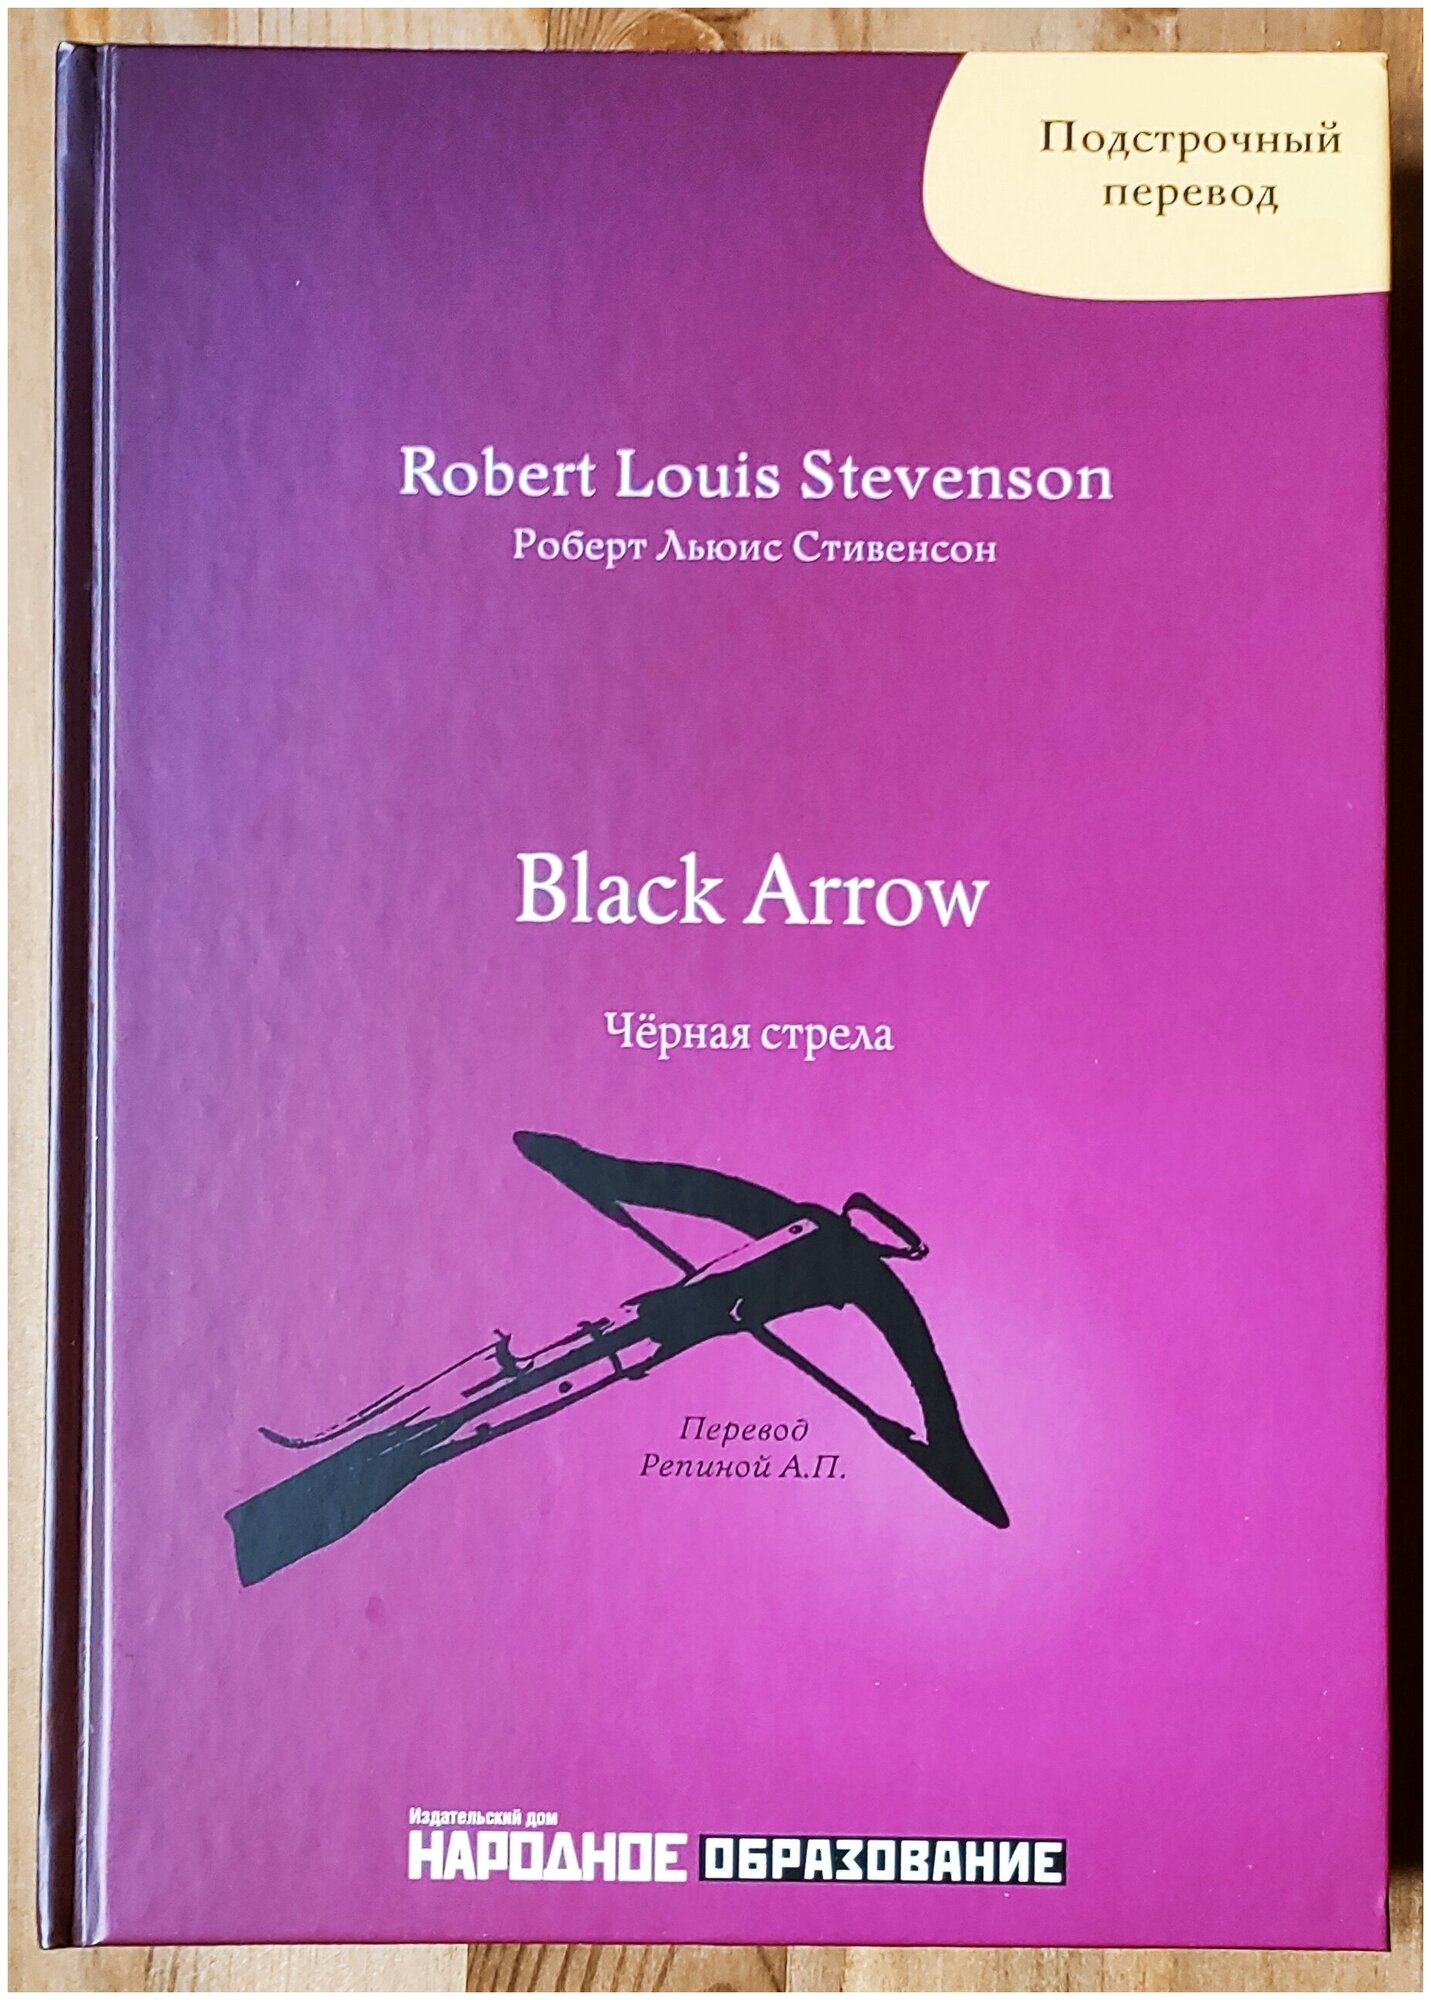 Роберт Л. Стивенсон. Чёрная стрела. Подстрочный перевод с английского языка на русский. R. L. Stevenson. Black Arrow.